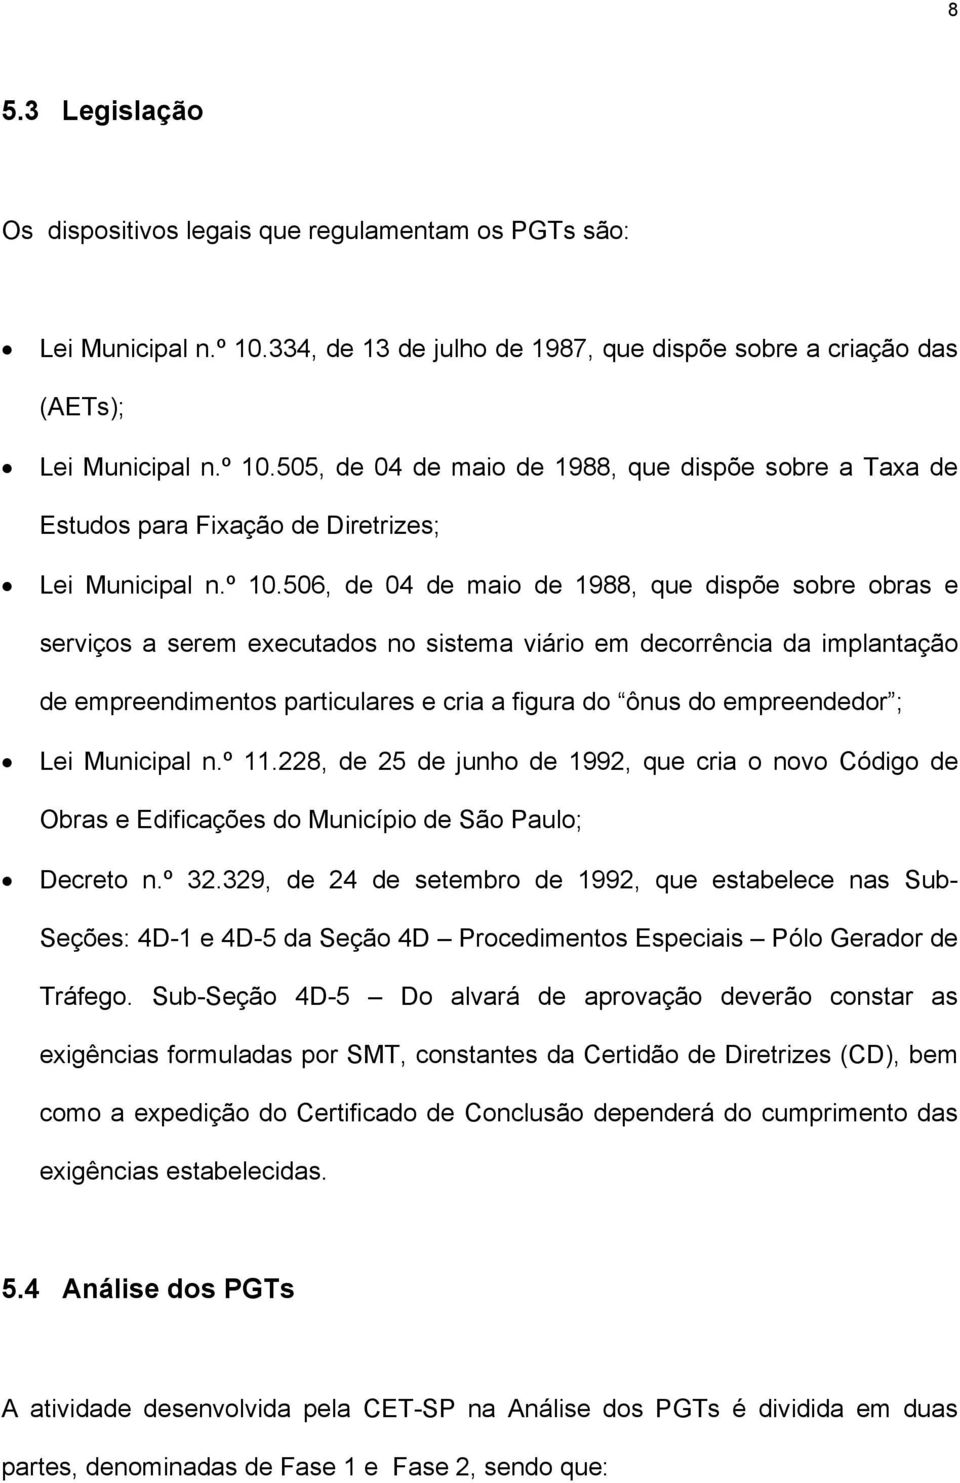 empreendedor ; Lei Municipal n.º 11.228, de 25 de junho de 1992, que cria o novo Código de Obras e Edificações do Município de São Paulo; Decreto n.º 32.